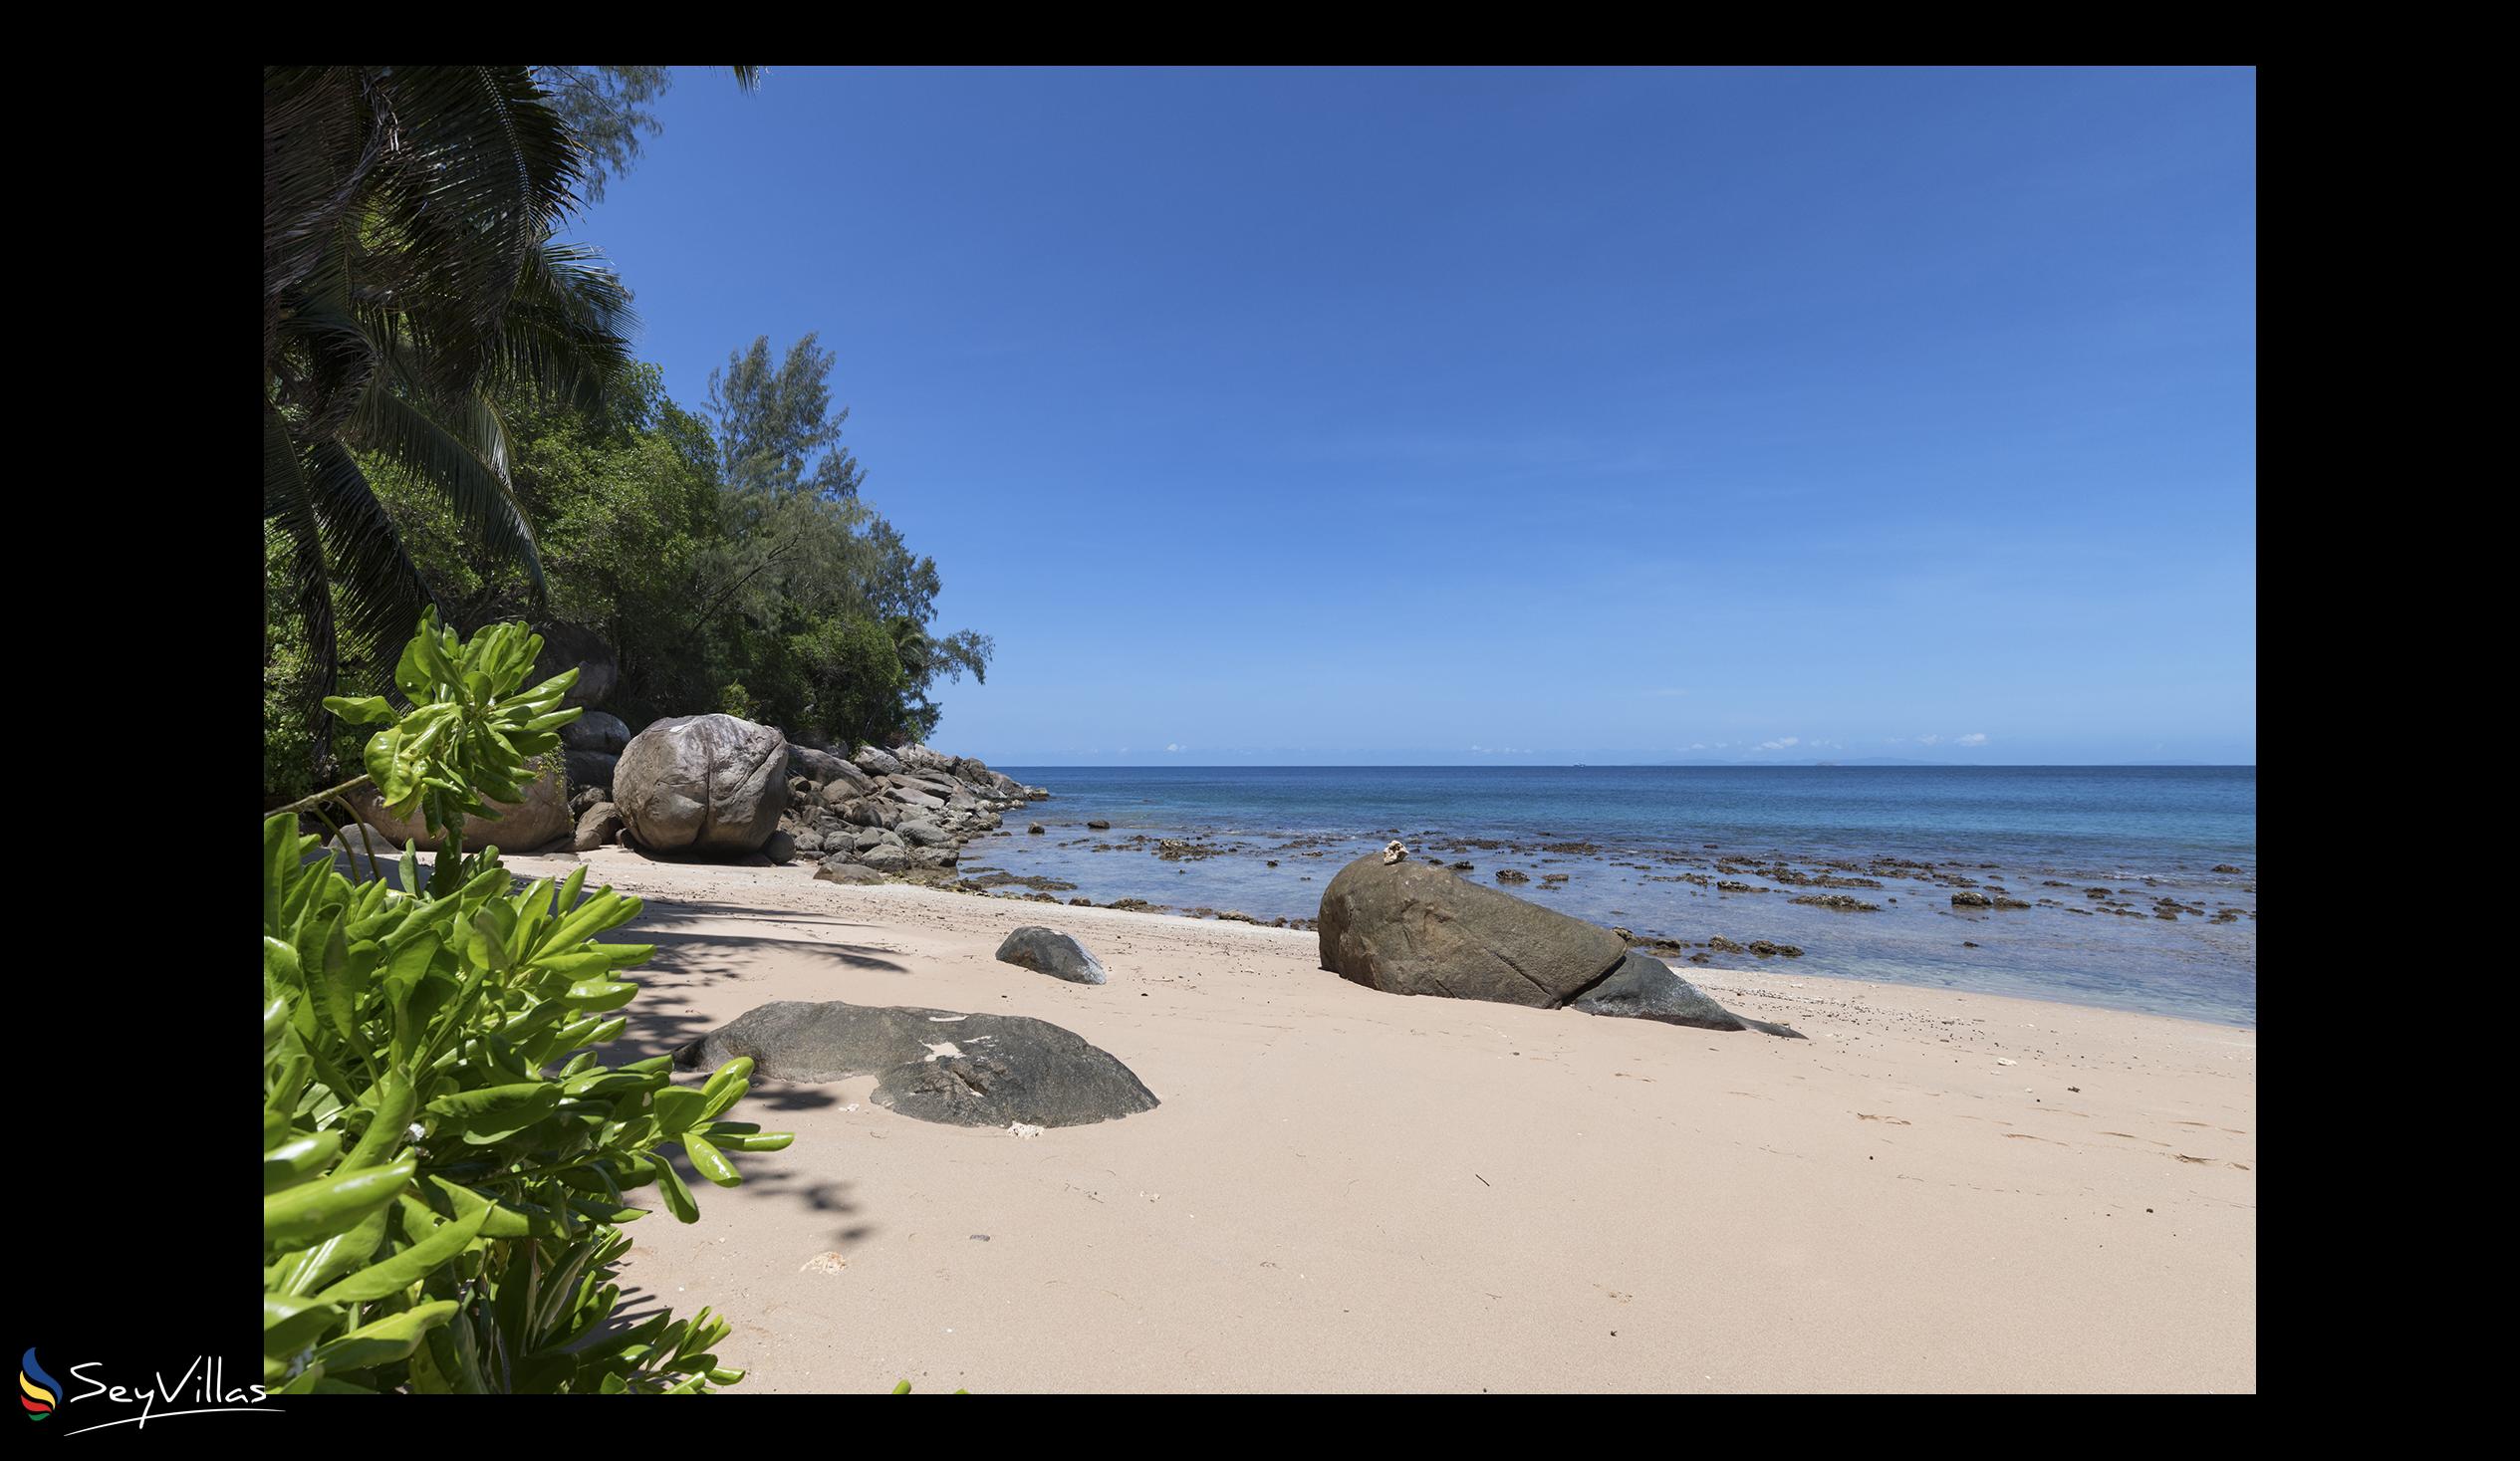 Photo 27: Villa Sea Monkey - Beaches - Mahé (Seychelles)